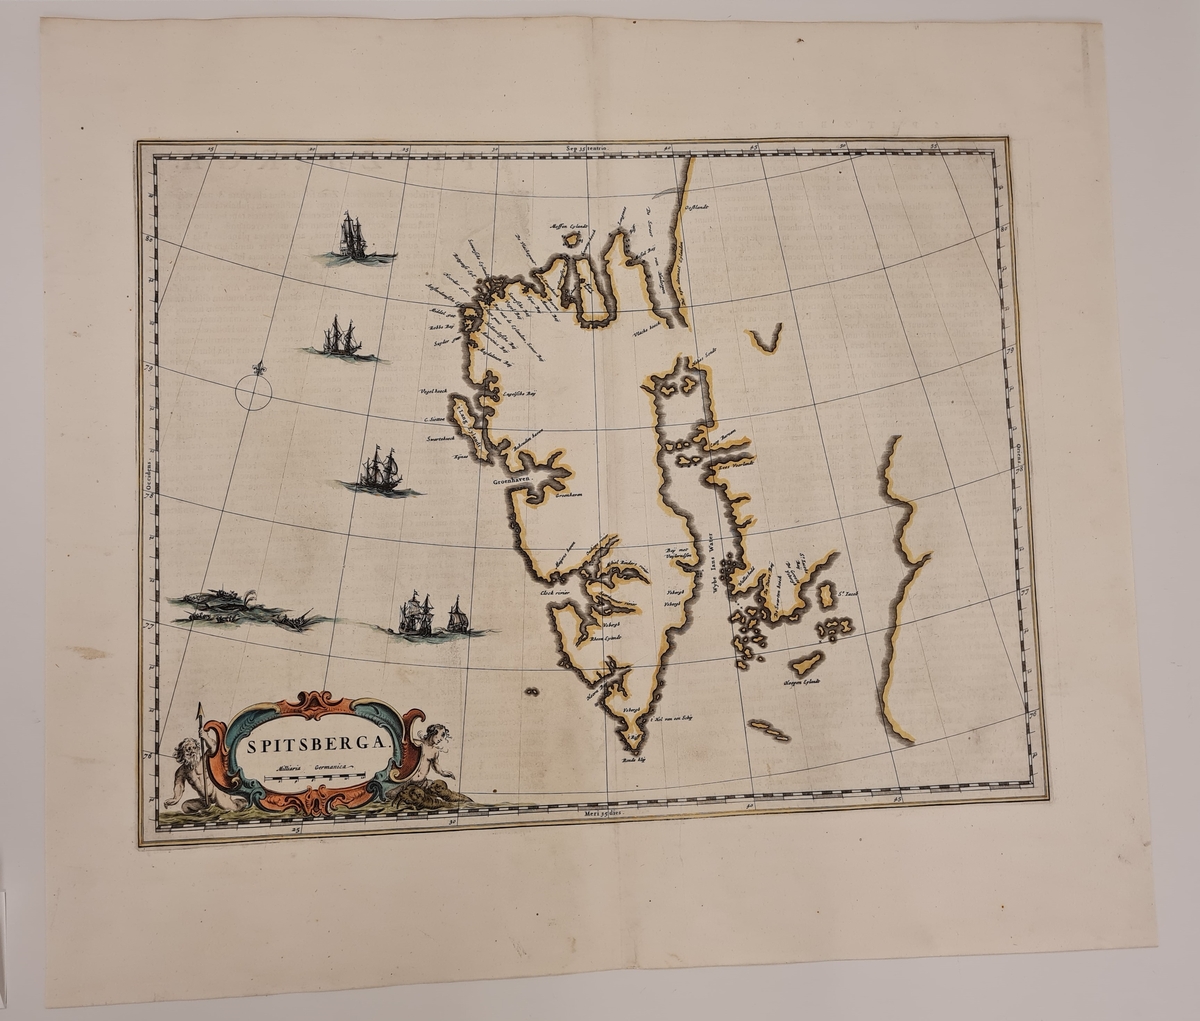 Kart over Spitsbergen. Baksidetekst på latin.